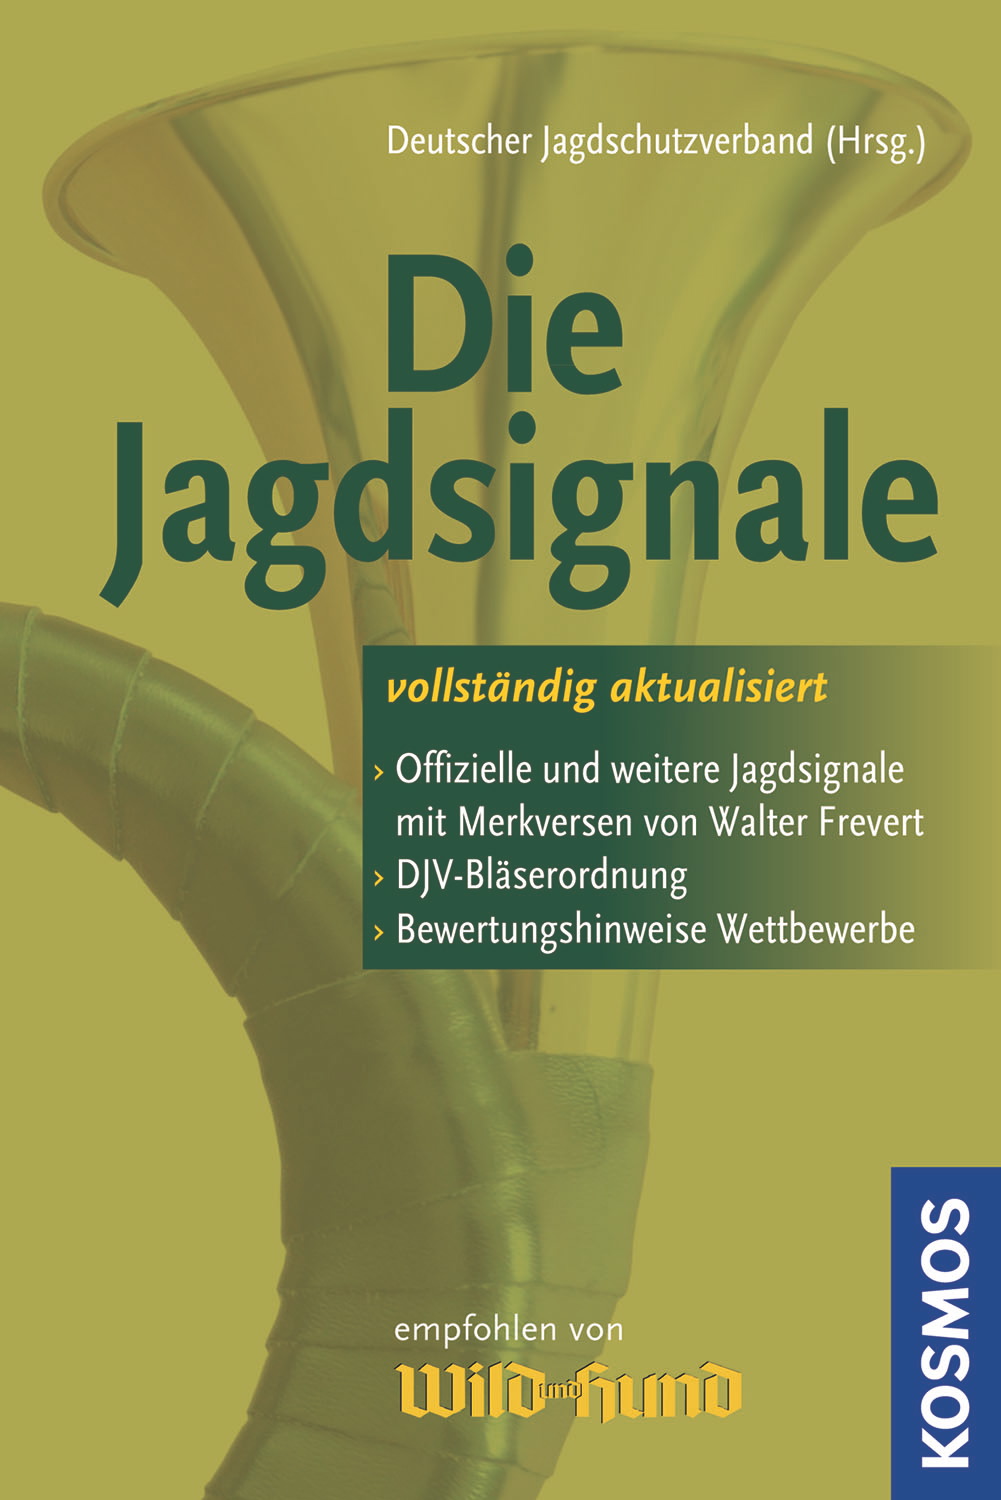 Kosmos Buch Die Jagdsignale  Ein unverzichtbares Werk für alle Jagdhornbläser mit DJV-Bläserordnung.